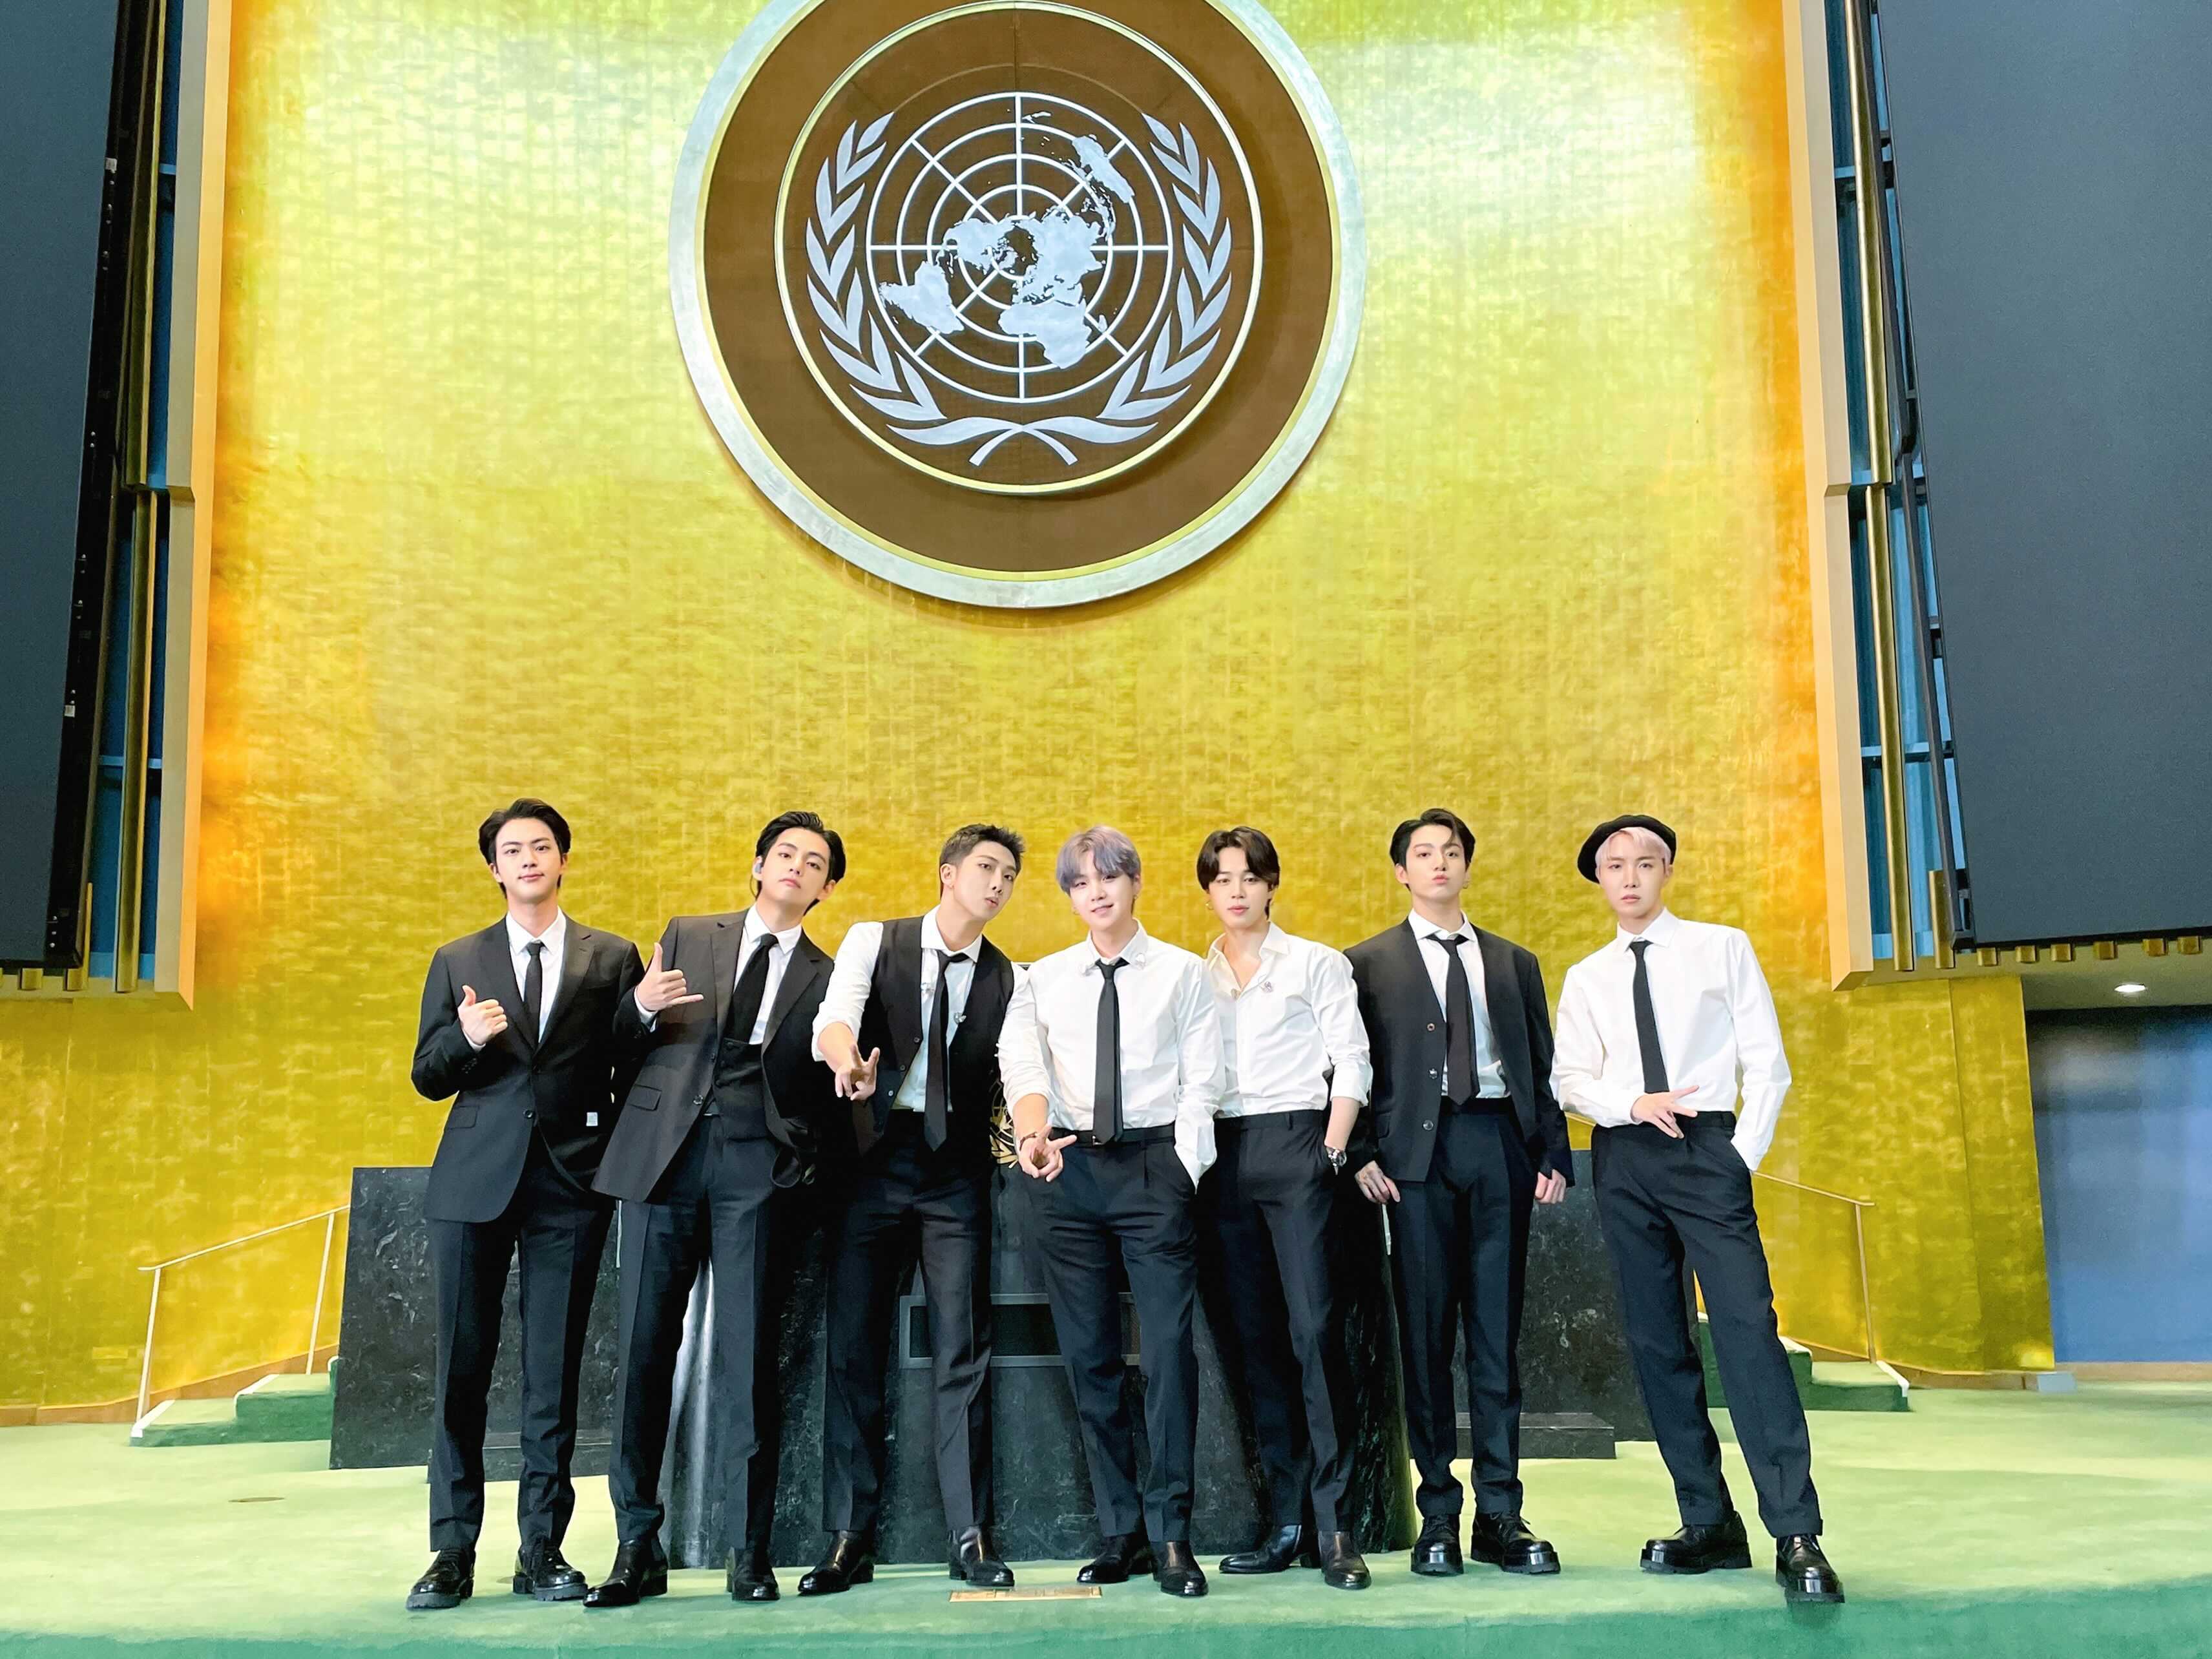 เปิดข้อความสุดประทับใจ จากวง 'BTS' บนเวที UN ถึงอนาคตคนรุ่นใหม่ยุคโควิด